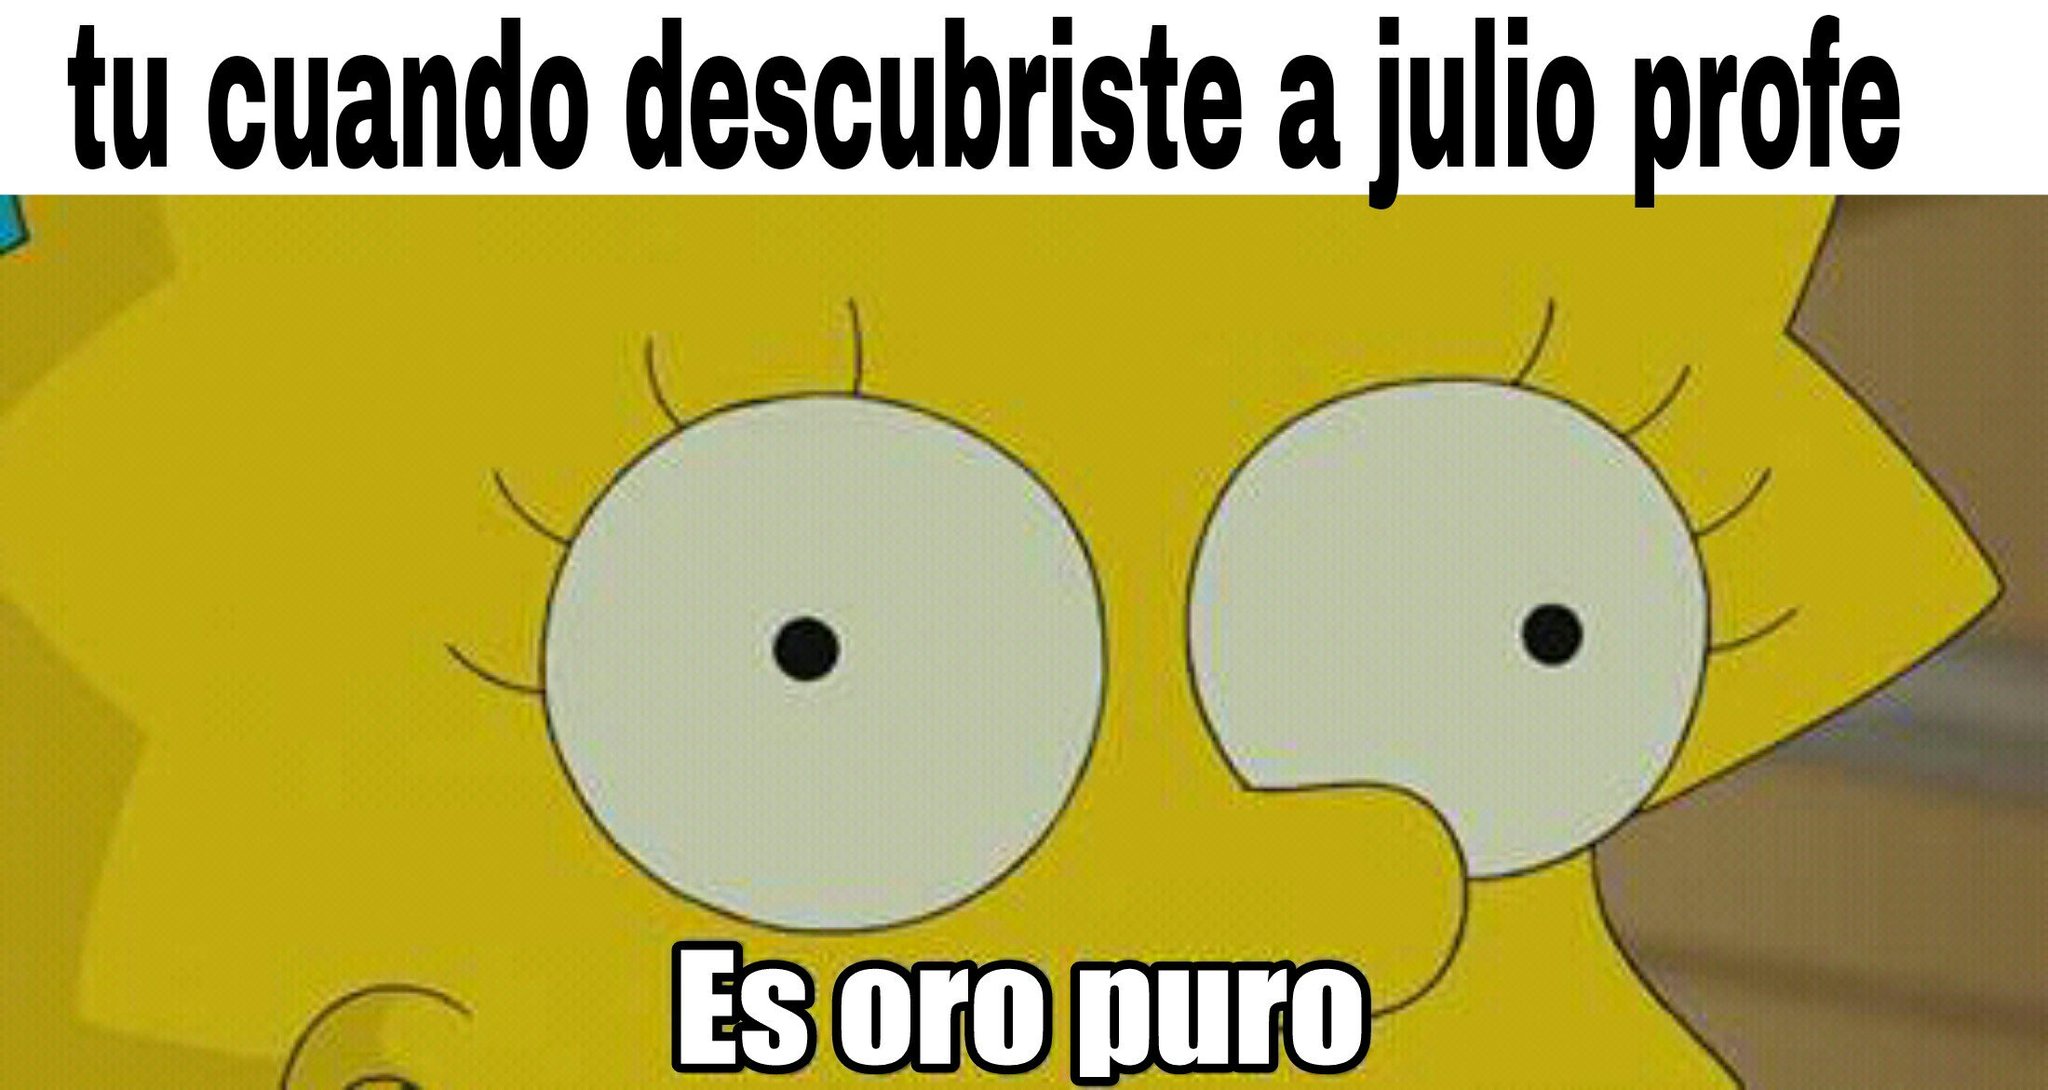 Julio profe - meme